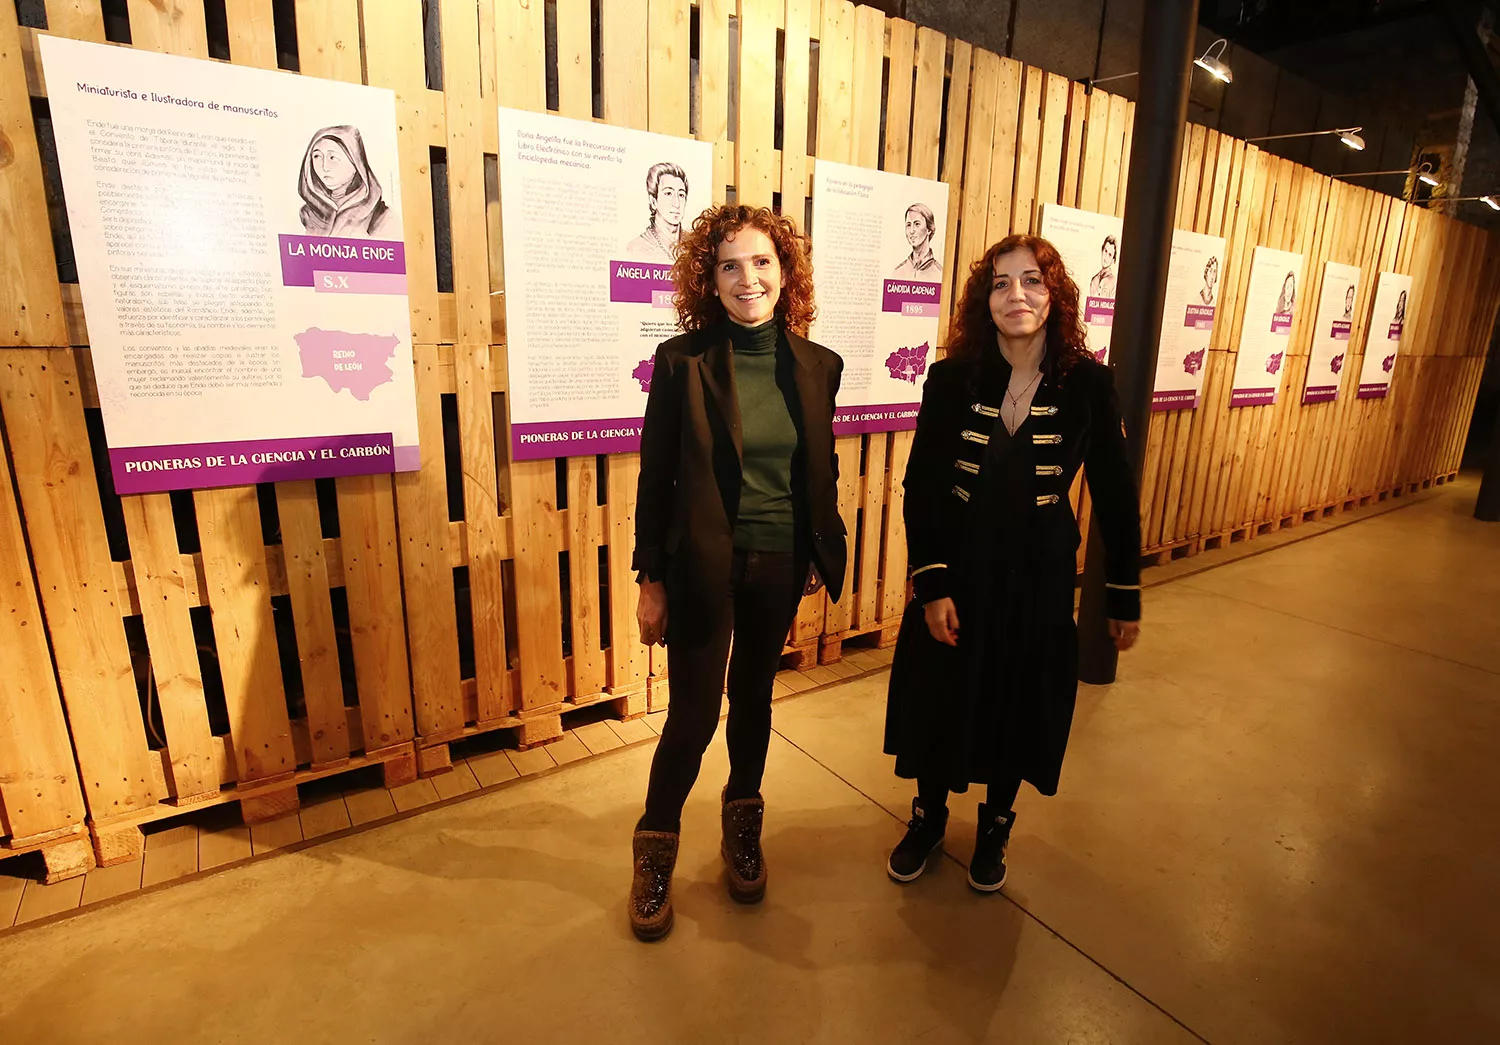 El Museo de la Energía de Ponferrada homenajea a mujeres de la ciencia y el carbón de la provincia de León con su nueva muestra temporal